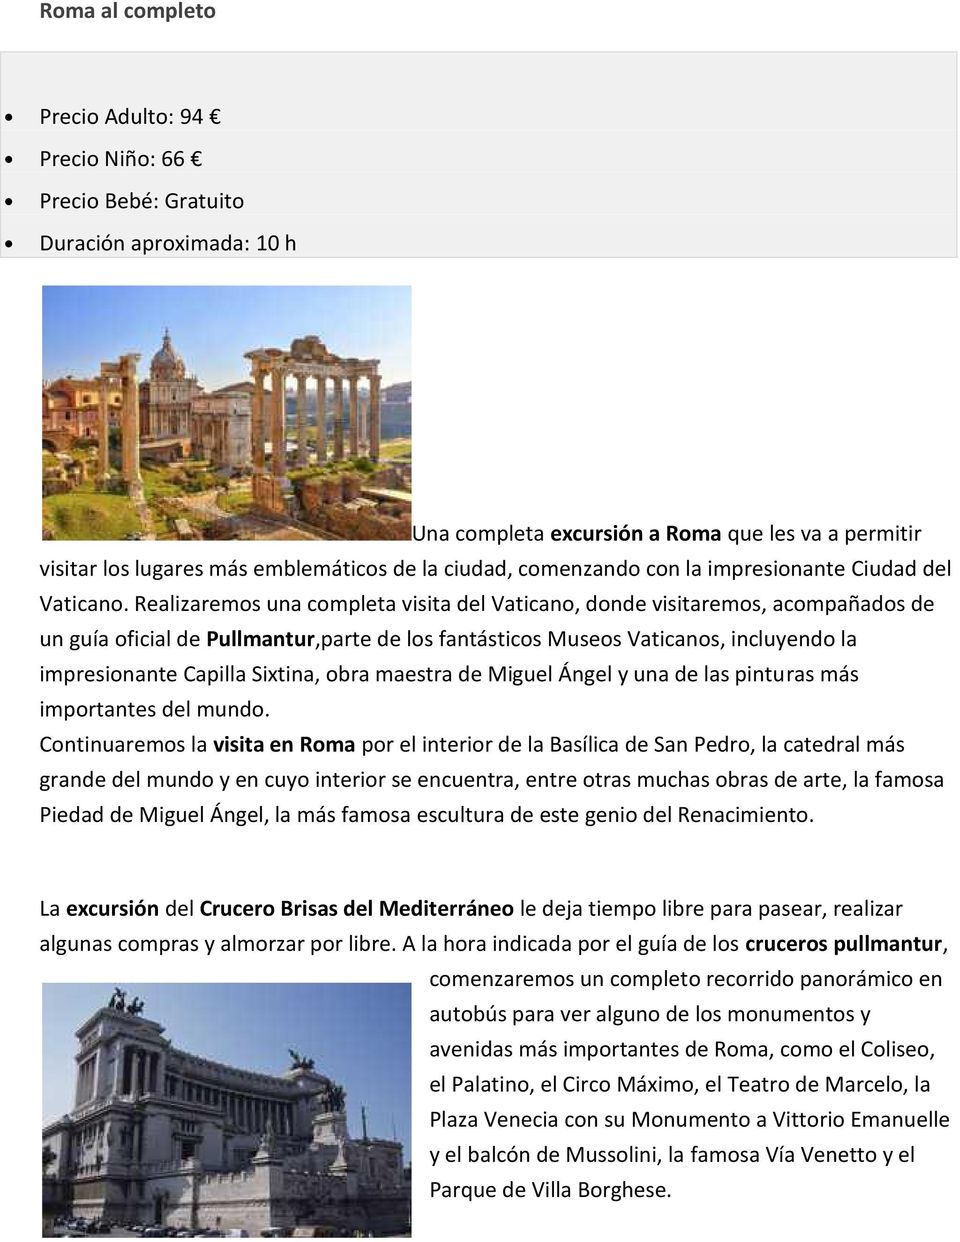 Realizaremos una completa visita del Vaticano, donde visitaremos, acompañados de un guía oficial de Pullmantur,parte de los fantásticos Museos Vaticanos, incluyendo la impresionante Capilla Sixtina,